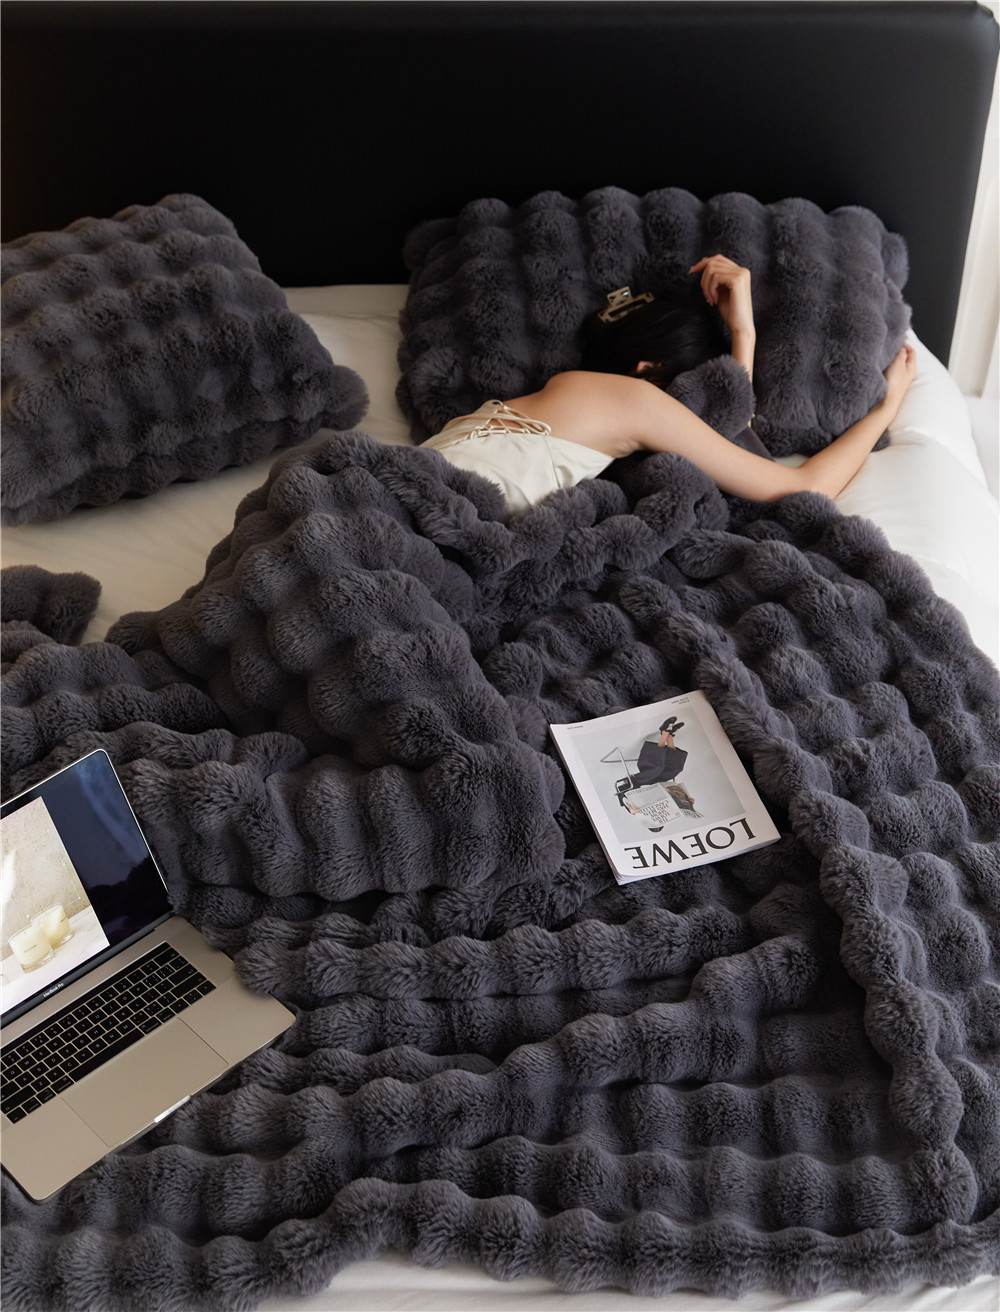 Tuscan Blanket Imitation Rex Rabbit Blanket Bubble Velvet Blanket Double-Sided Thickened Office Nap Blanket Sofa Blanket